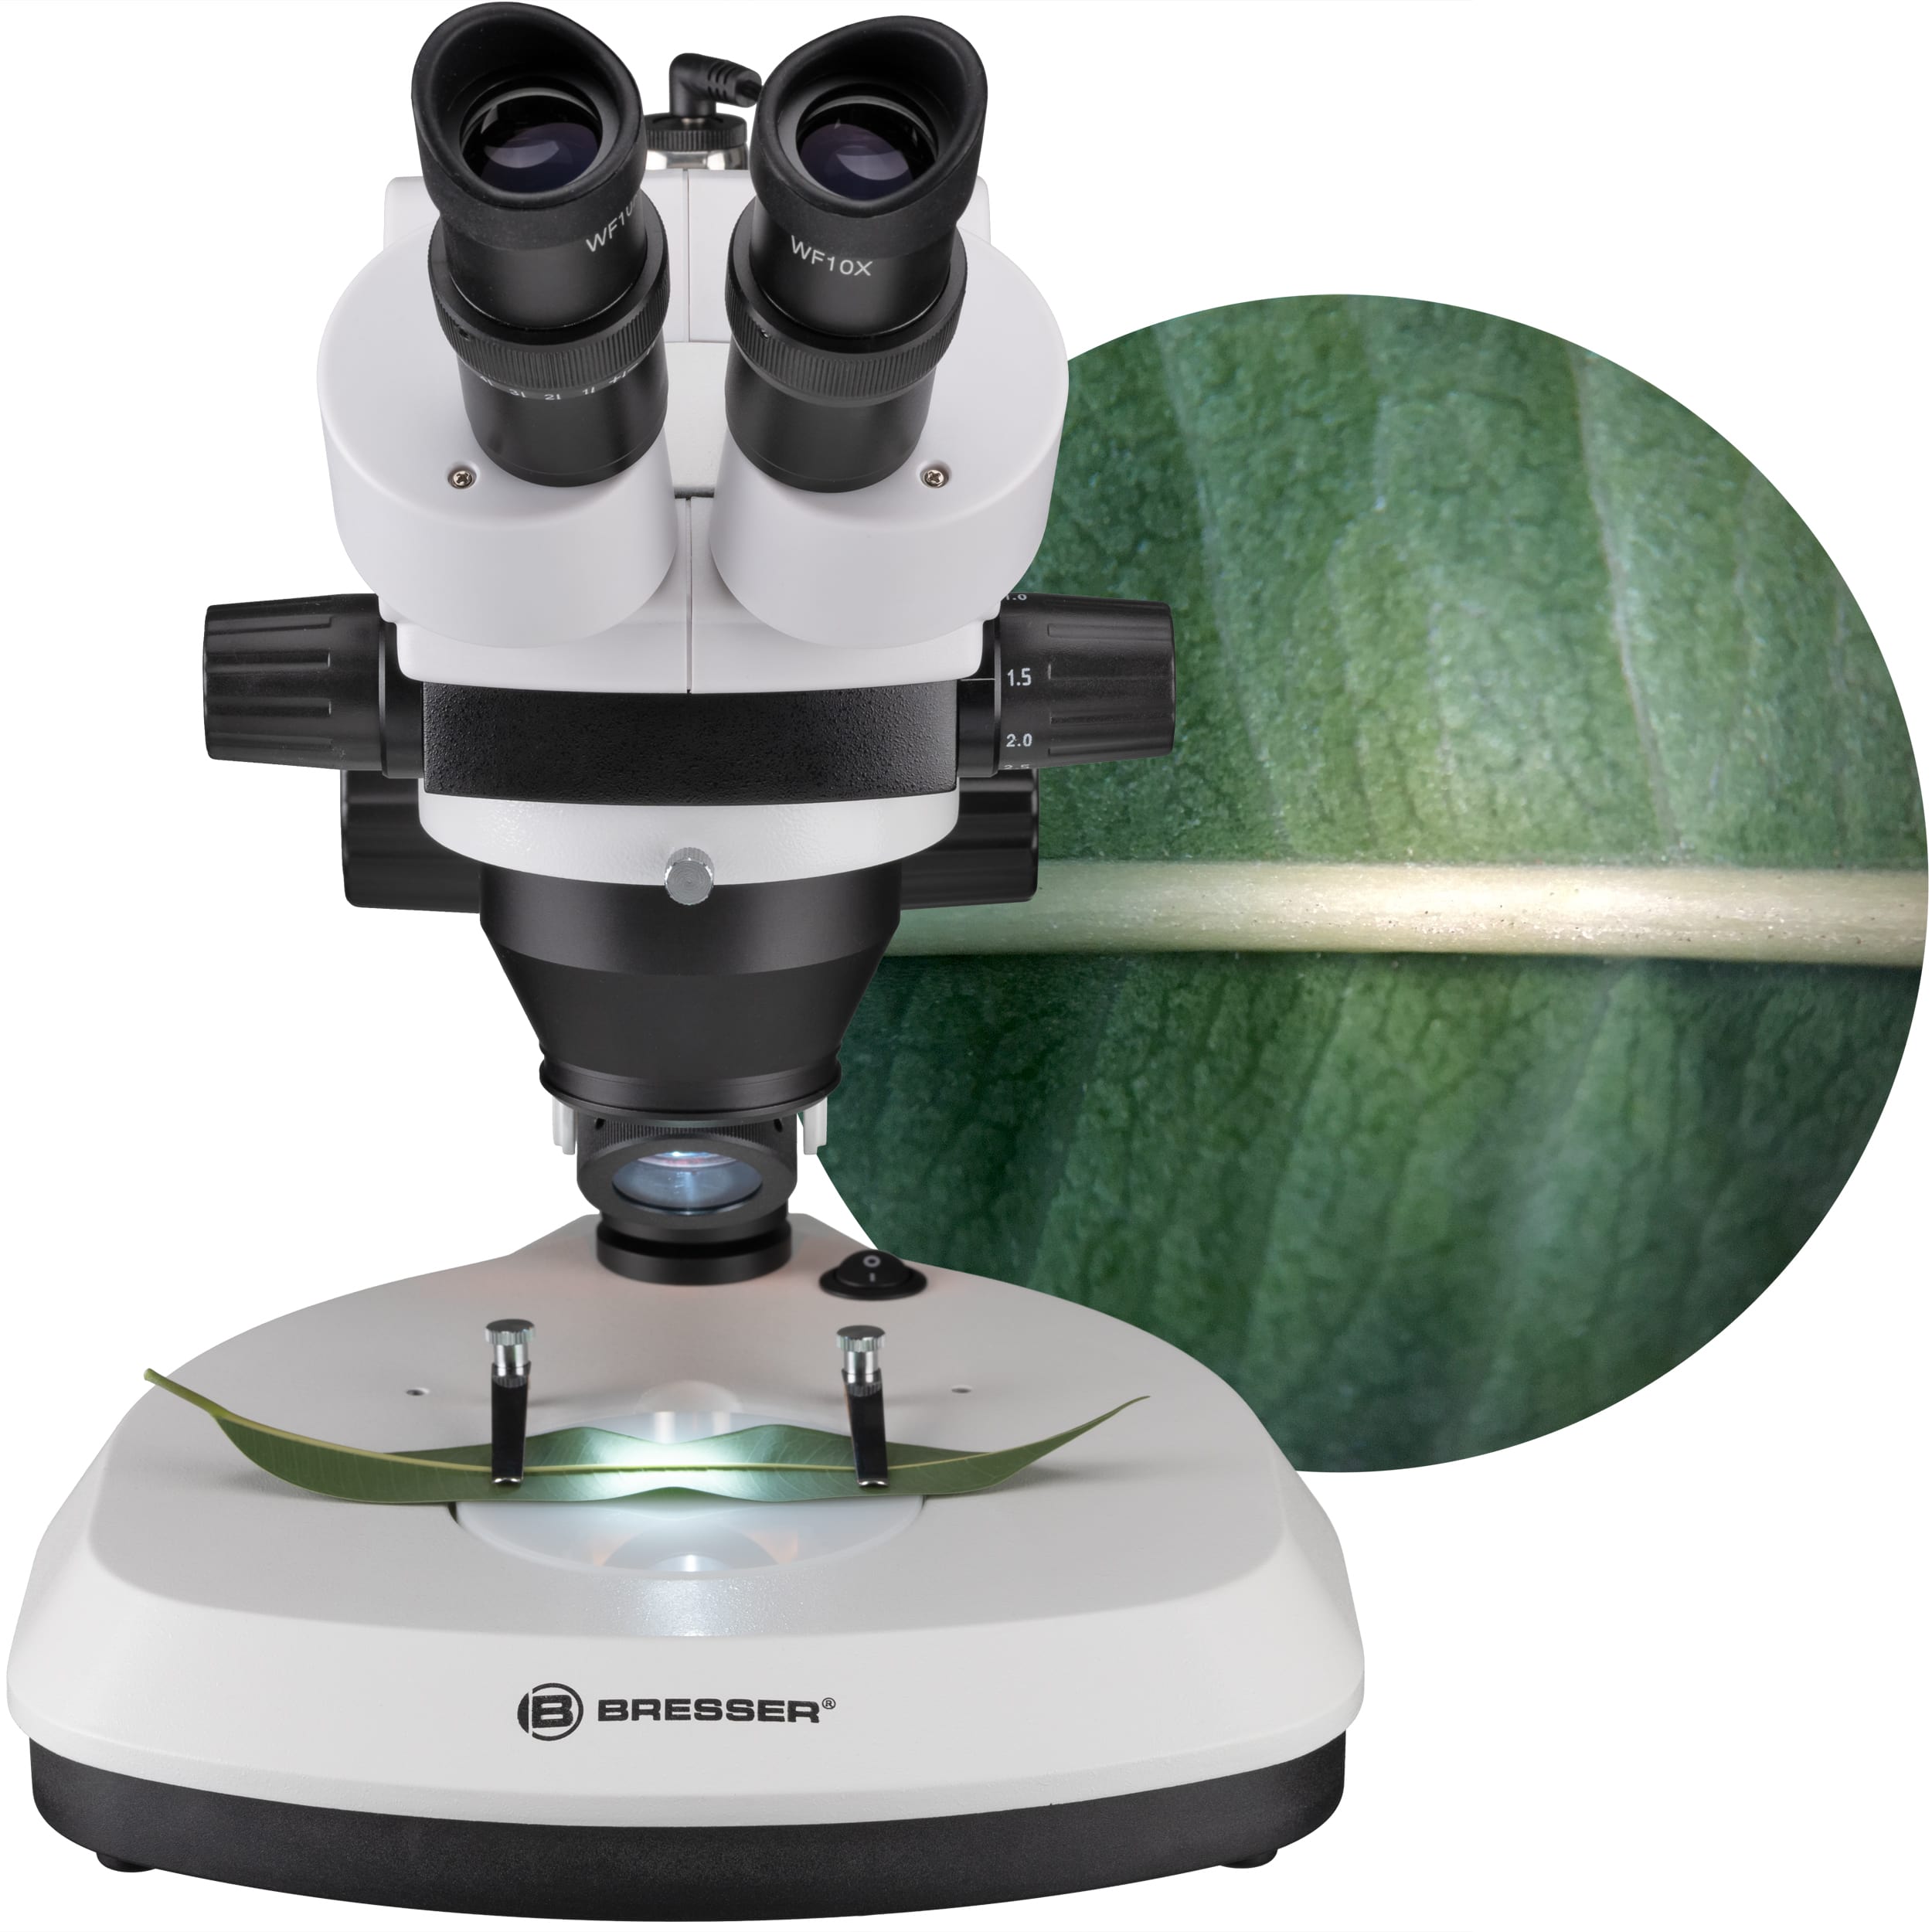   Microscopio stereo a luce incidente e trasmessa di alta qualità per applicazioni professionali  